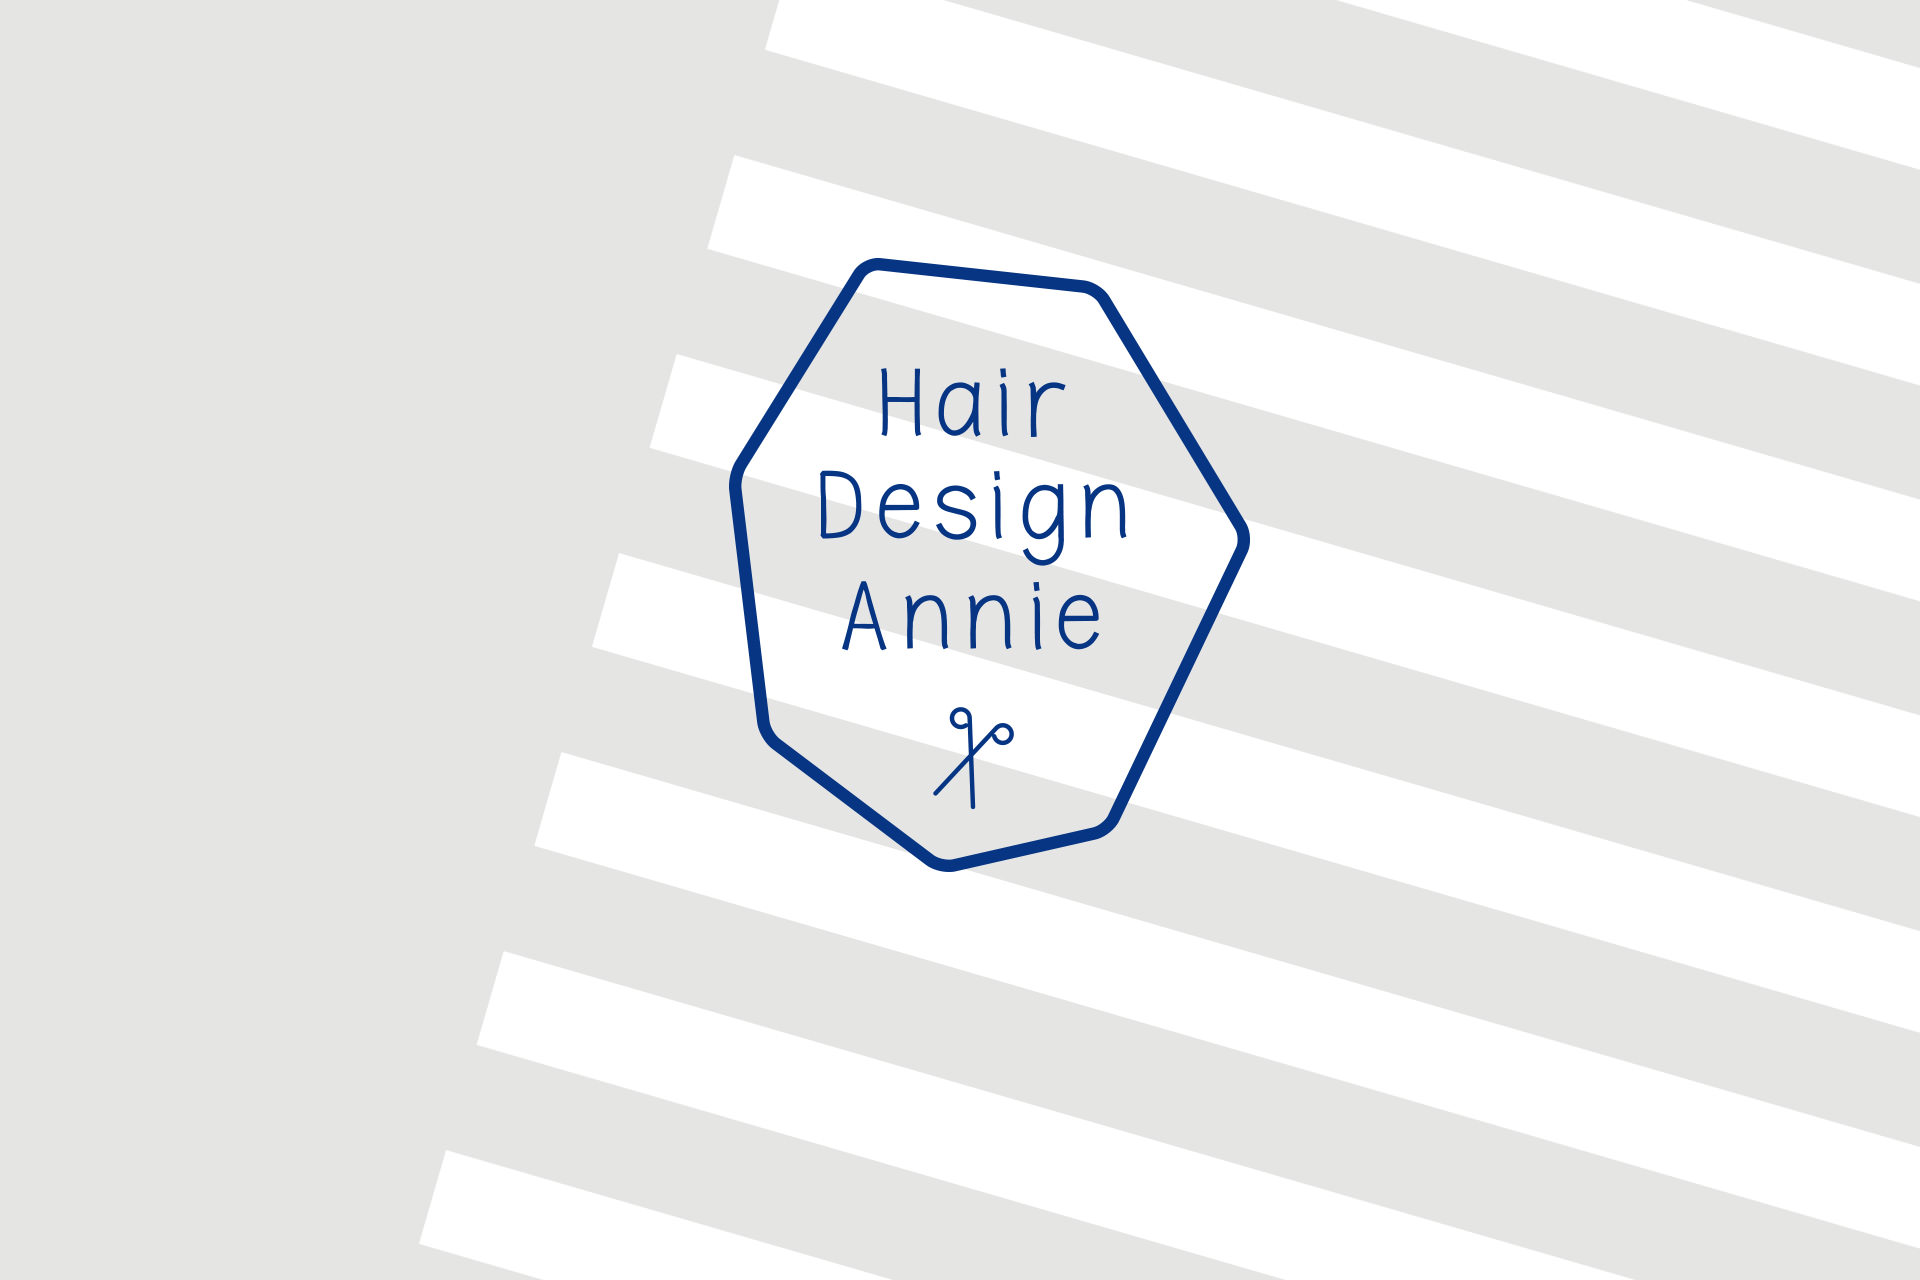 Hair Design Annie